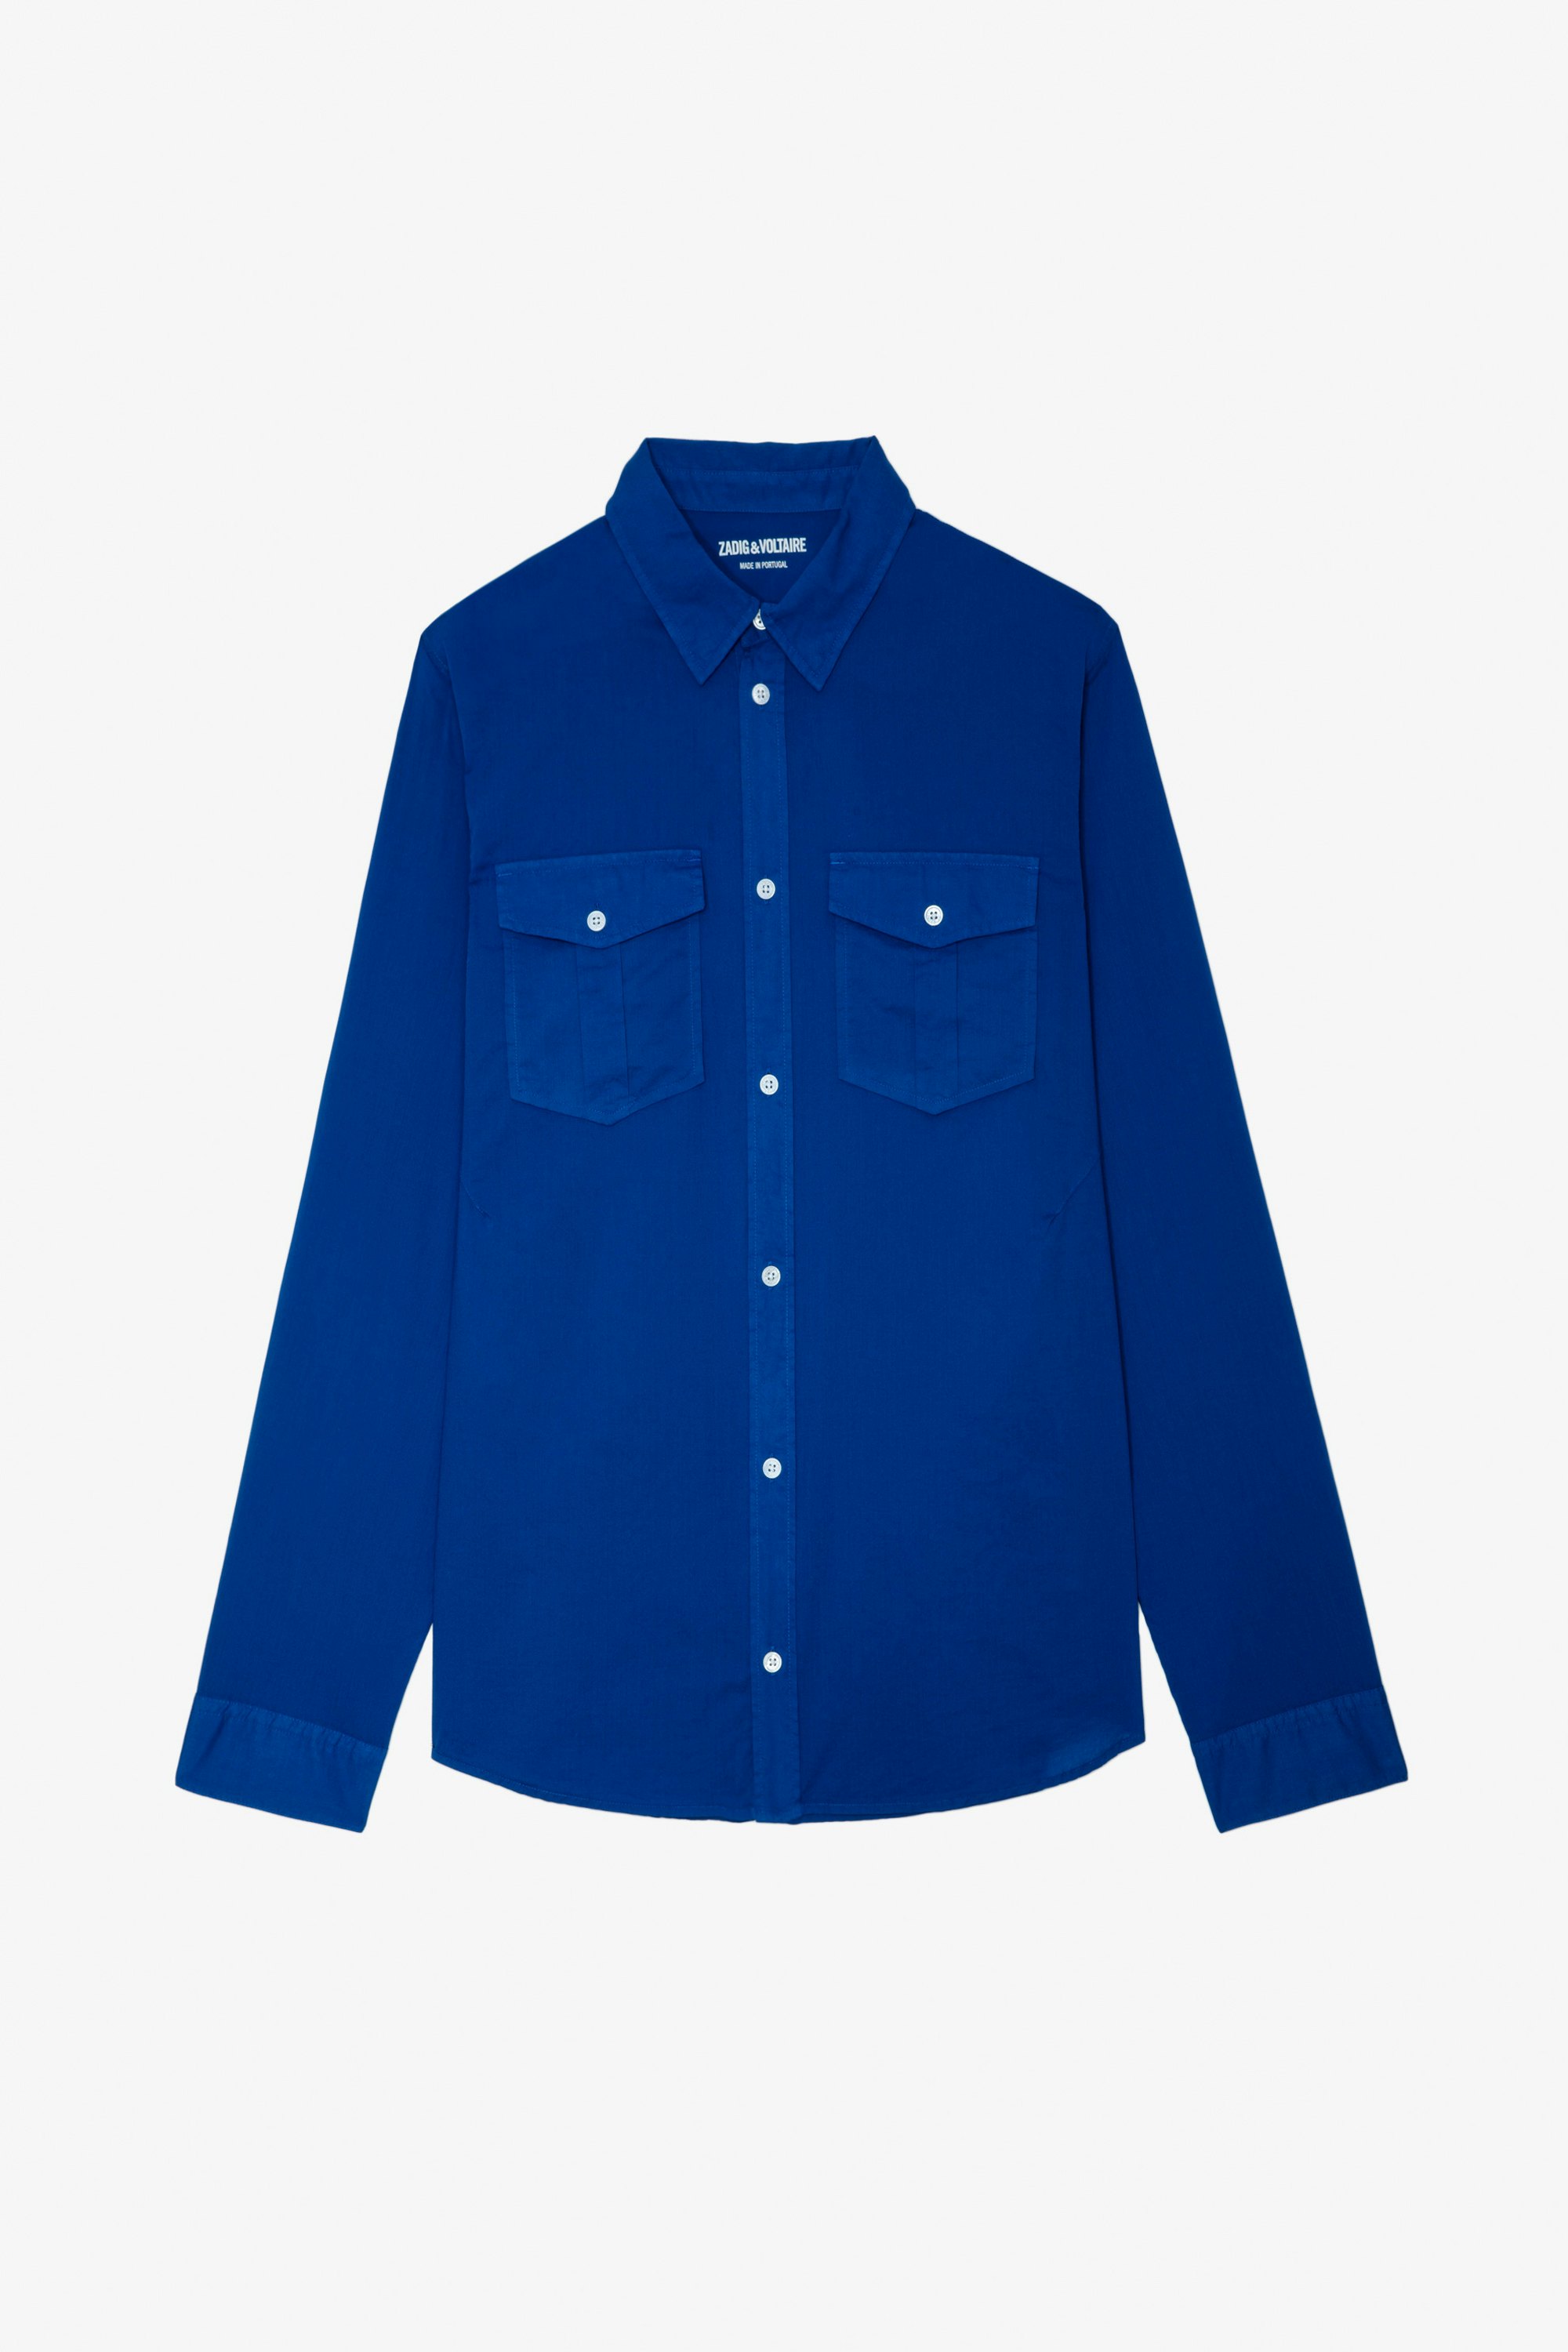 Hemd Thibault - Herrenhemd aus blauer Baumwolle